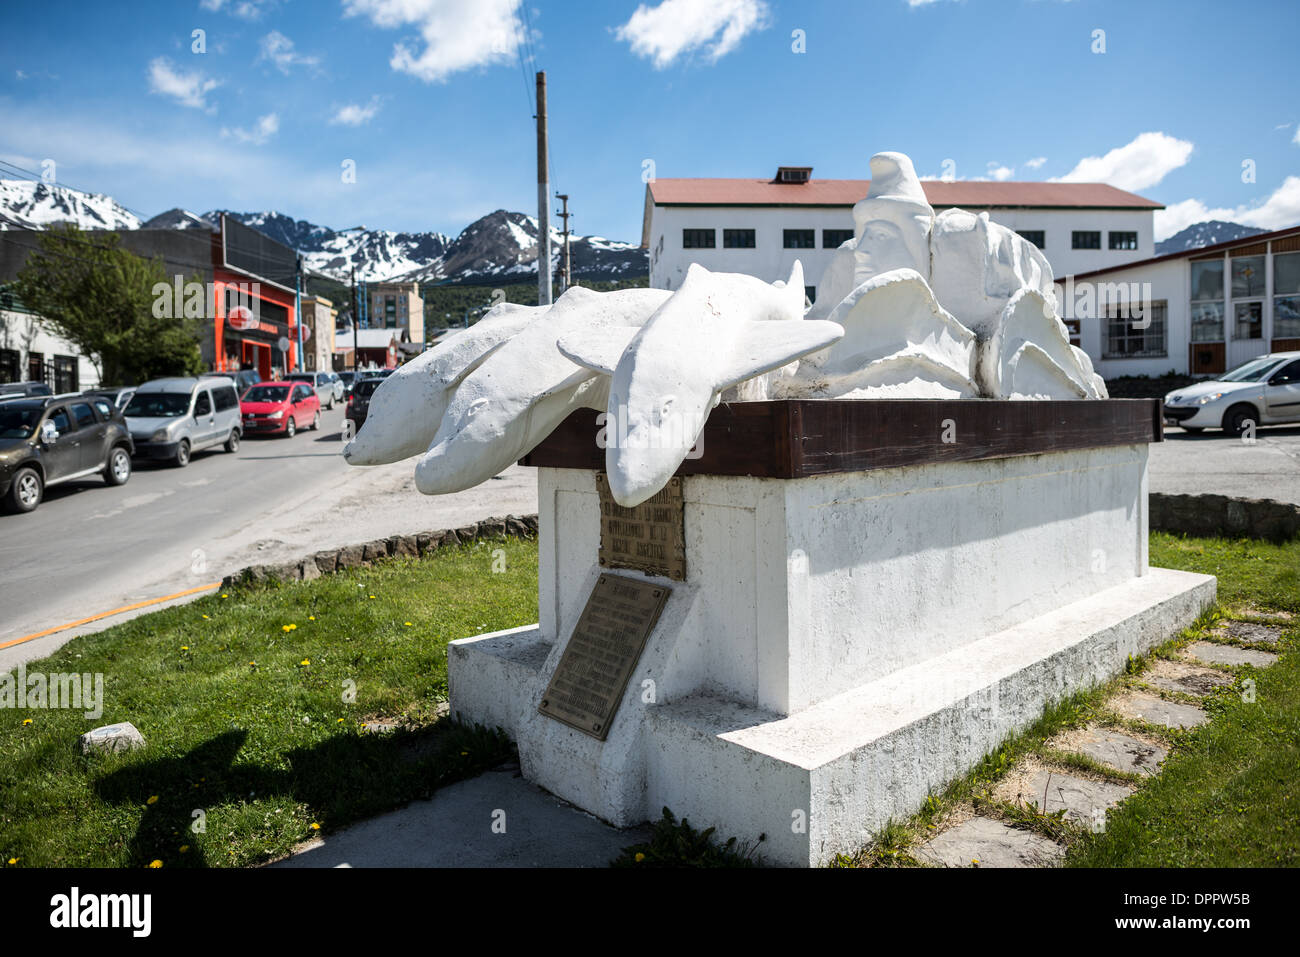 USHUAIA, Argentina - un monumento blanco instalado por la ciudad de Ushuaia rinde homenaje a la Armada Argentina, y se encuentra en la parte delantera de la base de la marina en la ciudad. Dedicado en octubre de 1971, este monumento es anterior a la guerra de las Islas Malvinas-Falkland, objeto de otros monumentos de la ciudad. Foto de stock